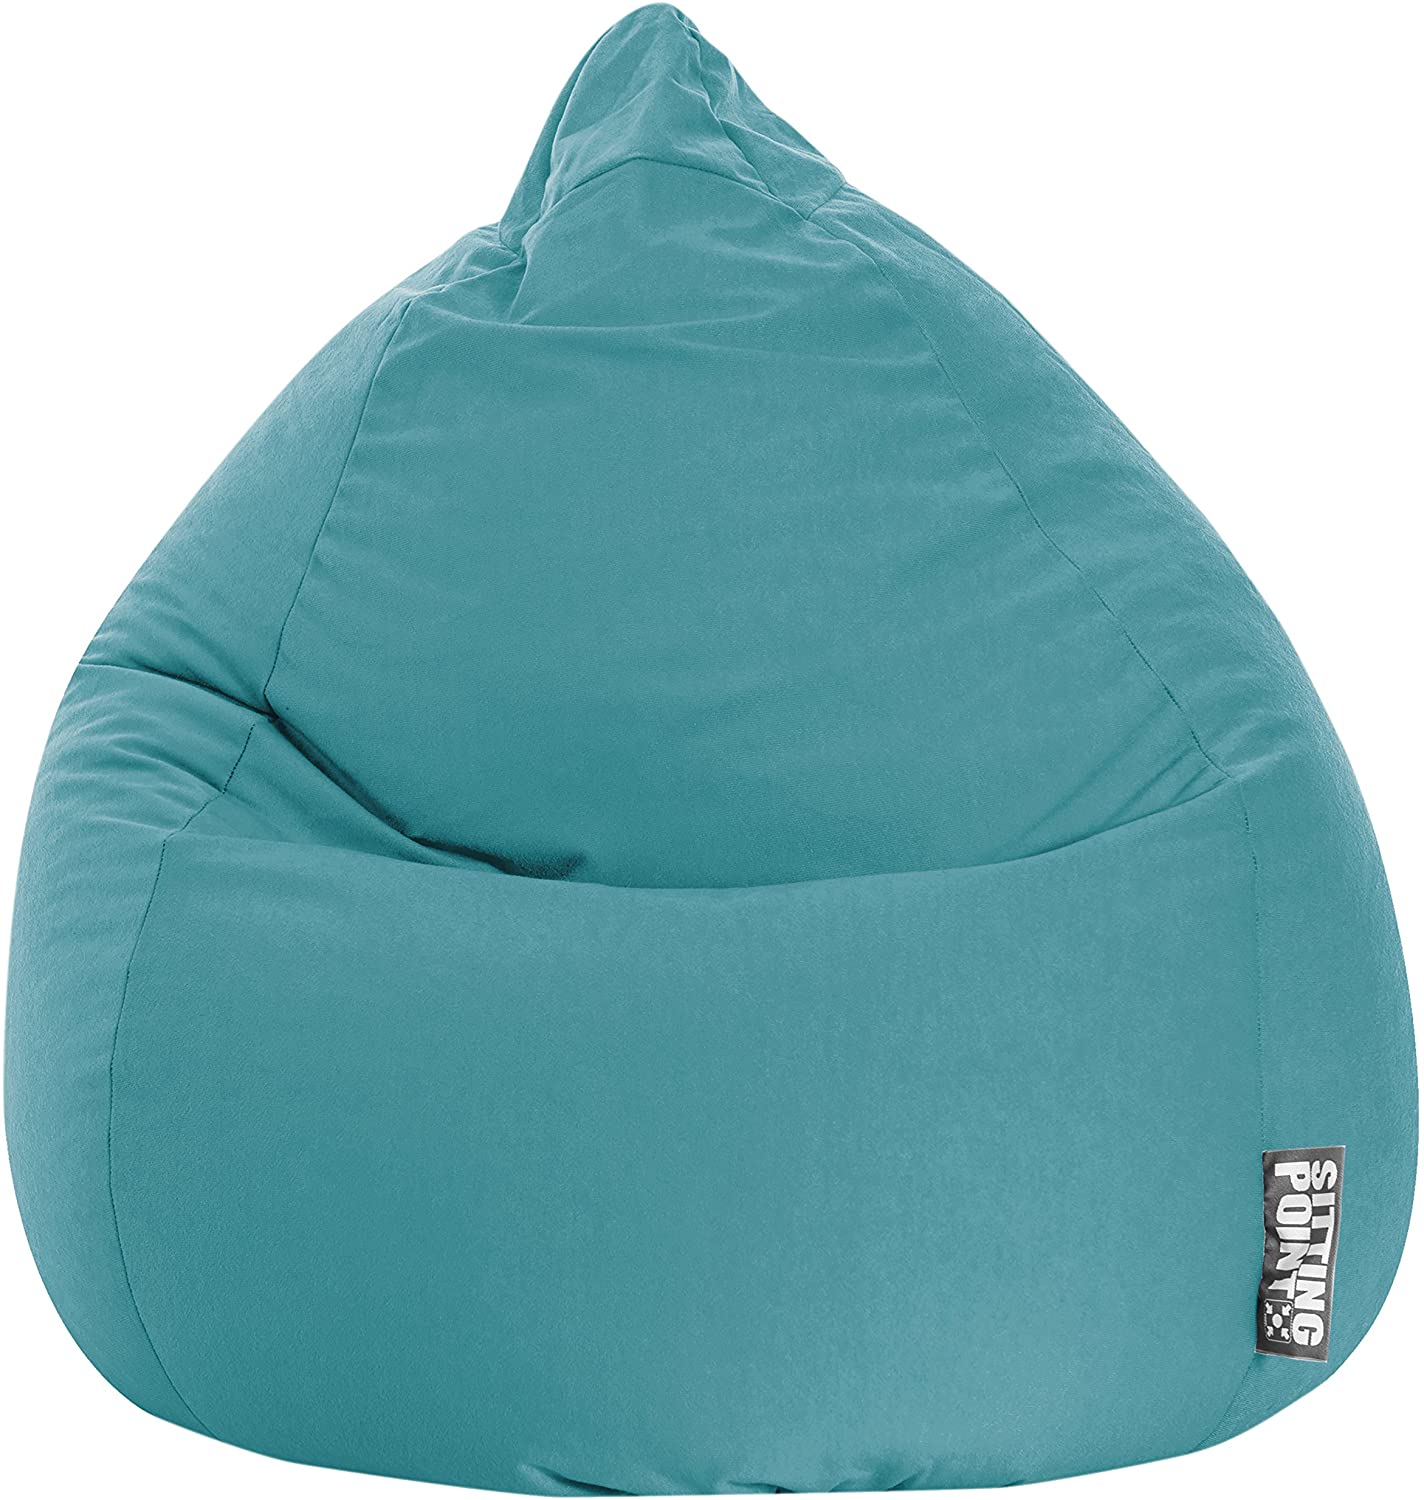 Gouchee Home Plush Oversized Bean Bag Chair